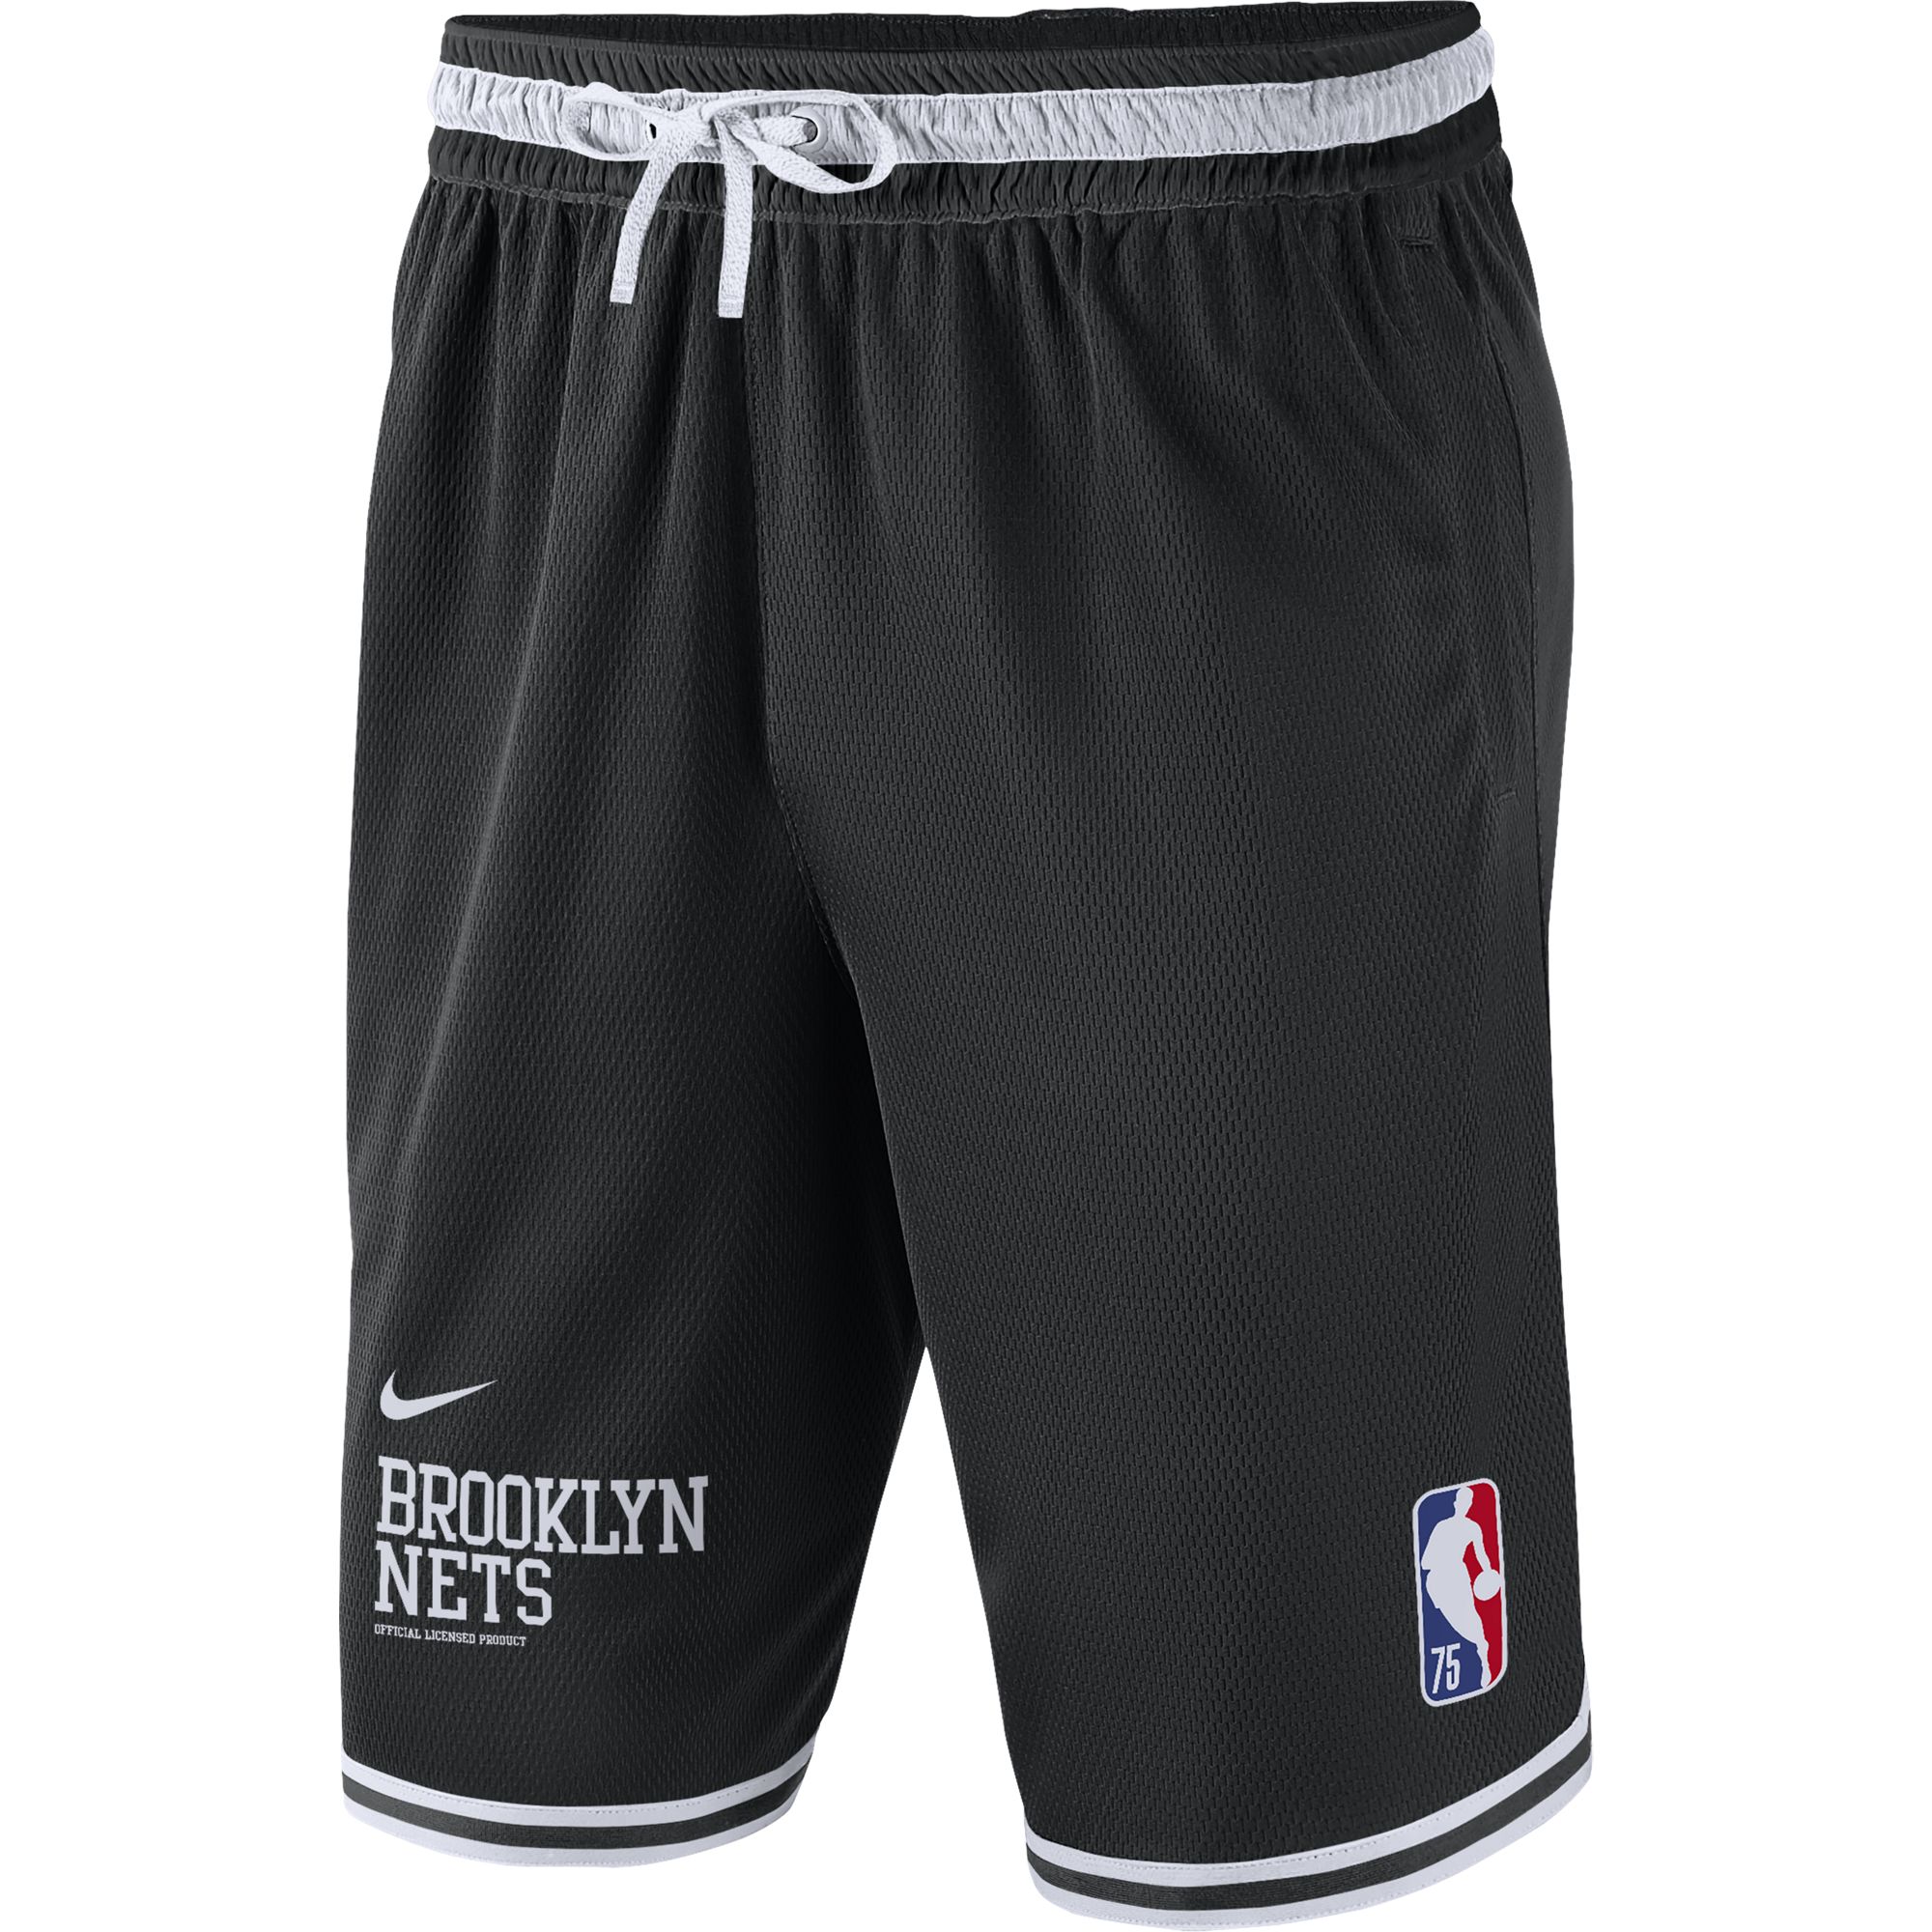 Баскетбольные шорты Nike Brooklyn Nets Courtside DNA - картинка